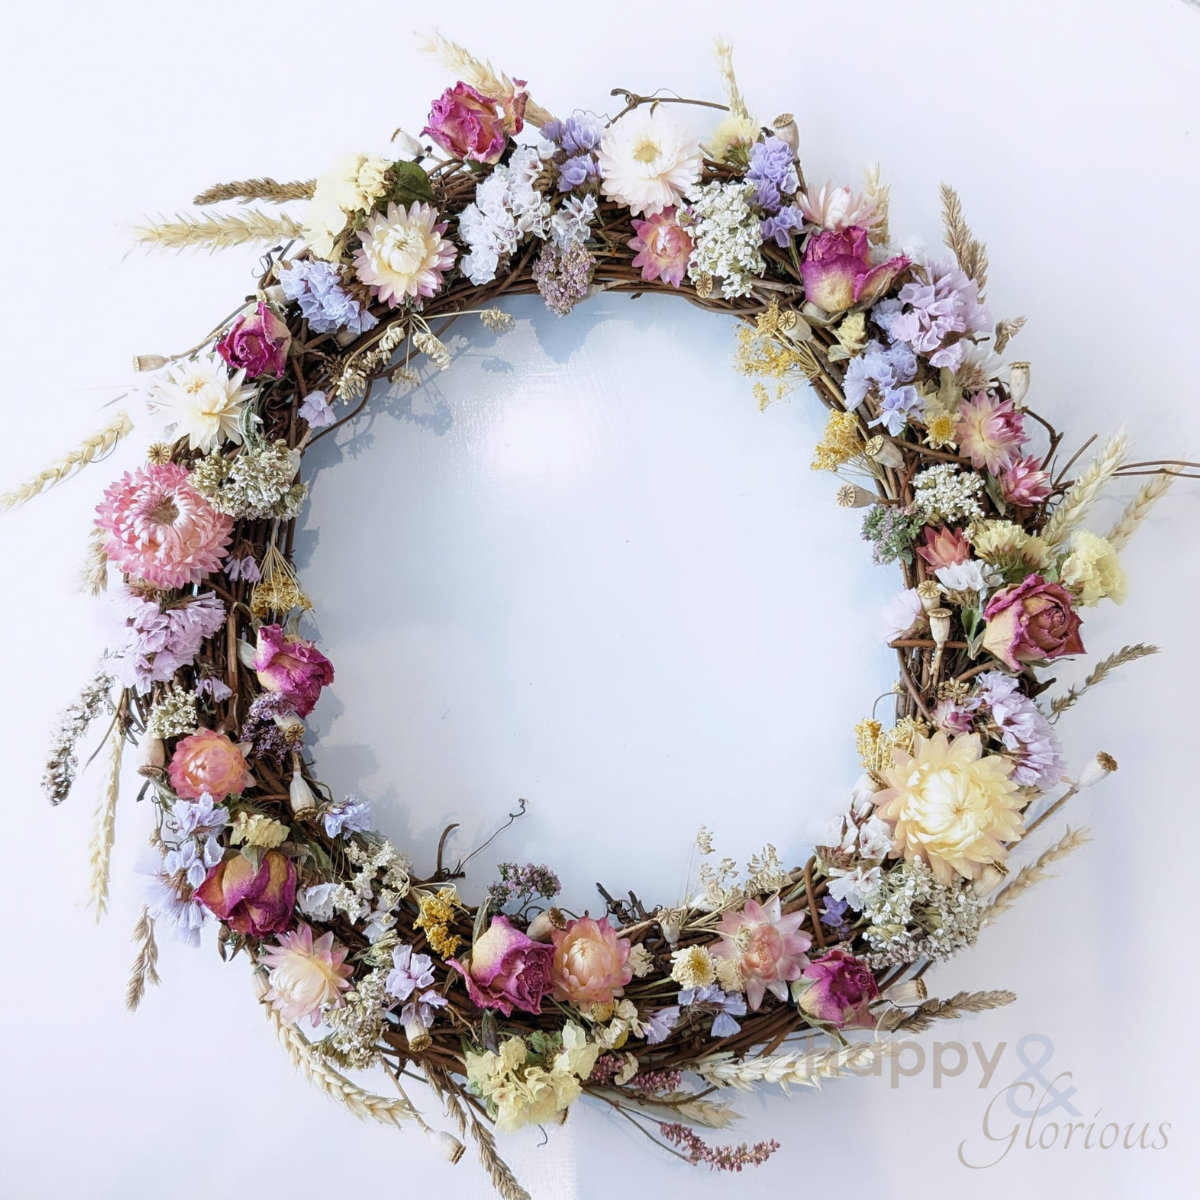 Summer dried flower wreath workshop  - Monday 1st July